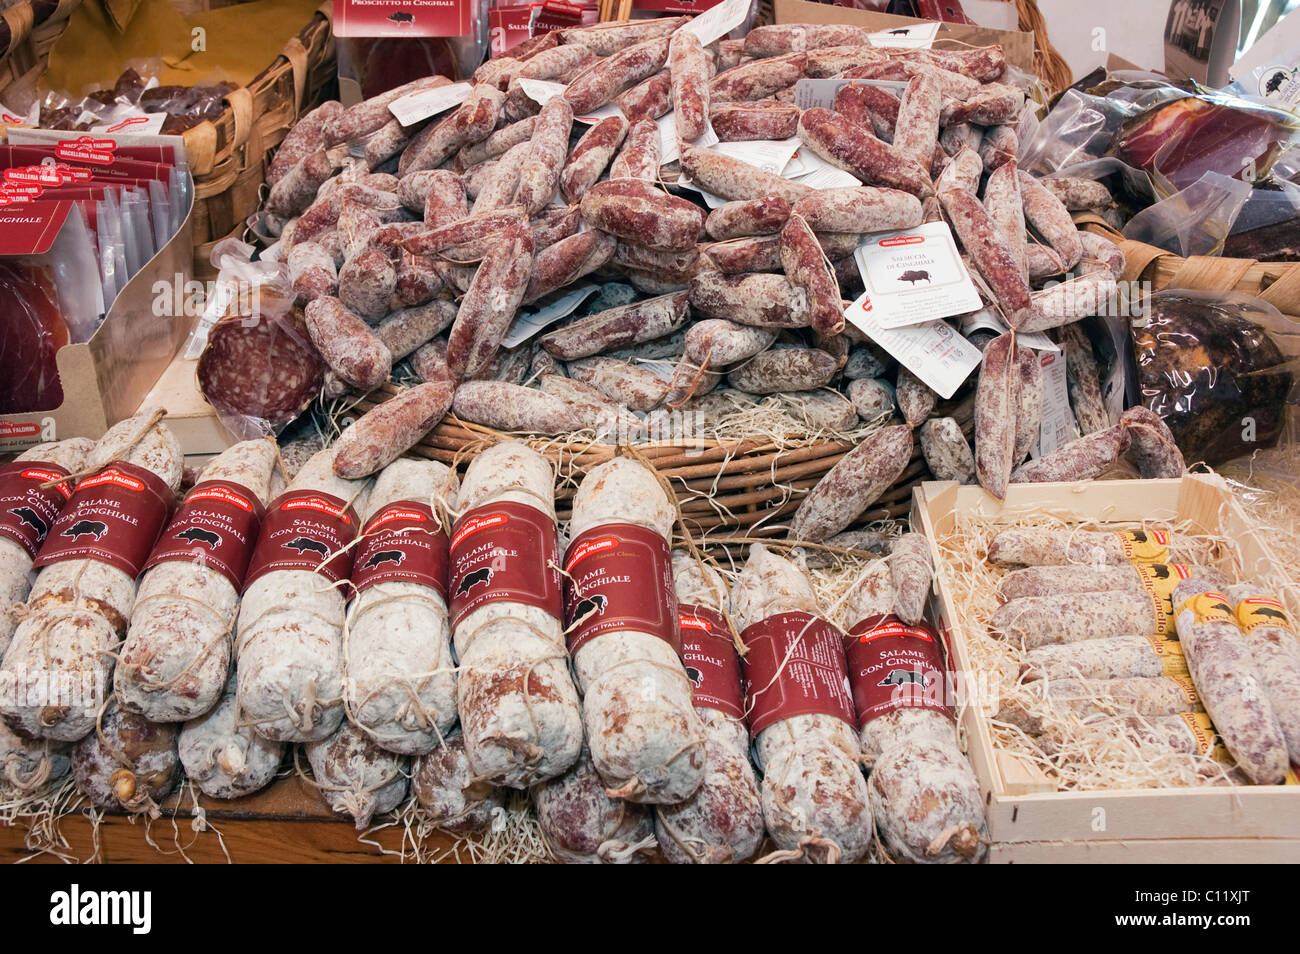 Wild boar salami in a delicatessen shop, Norcineria Falorni, Greve, Chianti, Tuscany, Italy, Europe Stock Photo